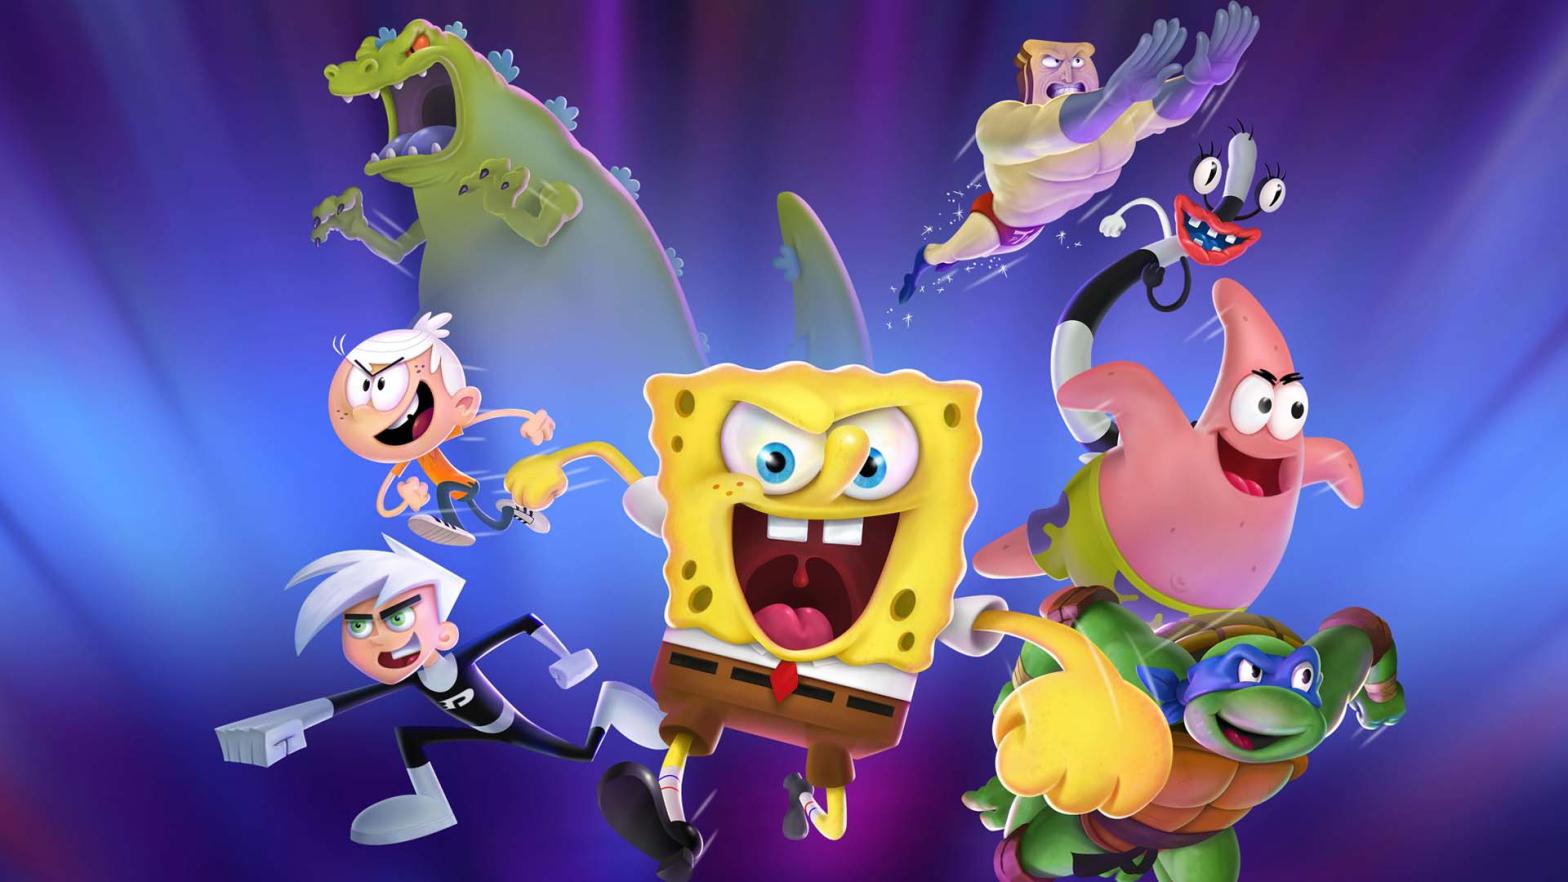 Image: Nickelodeon / GameMill